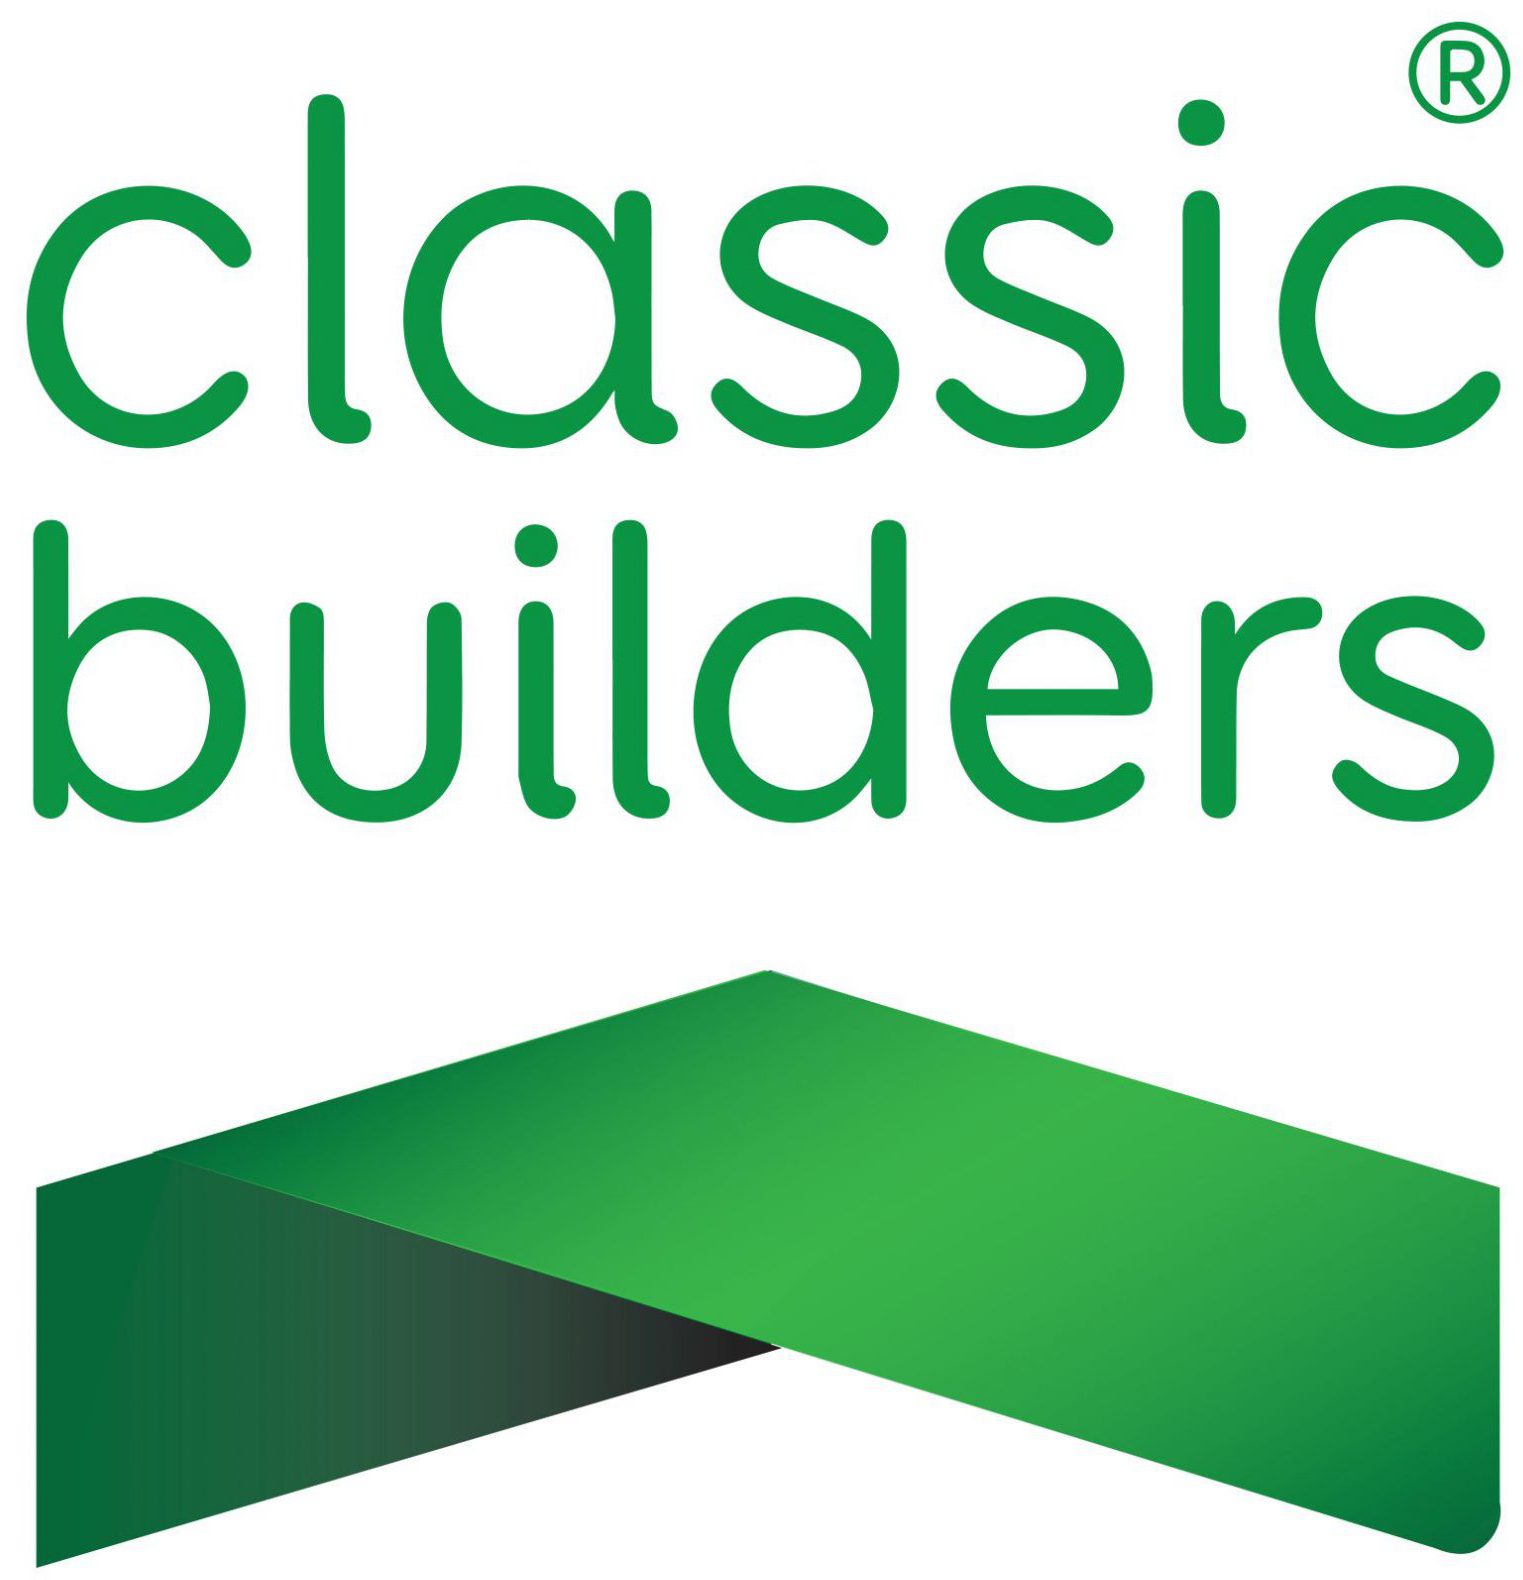 Classic Builders